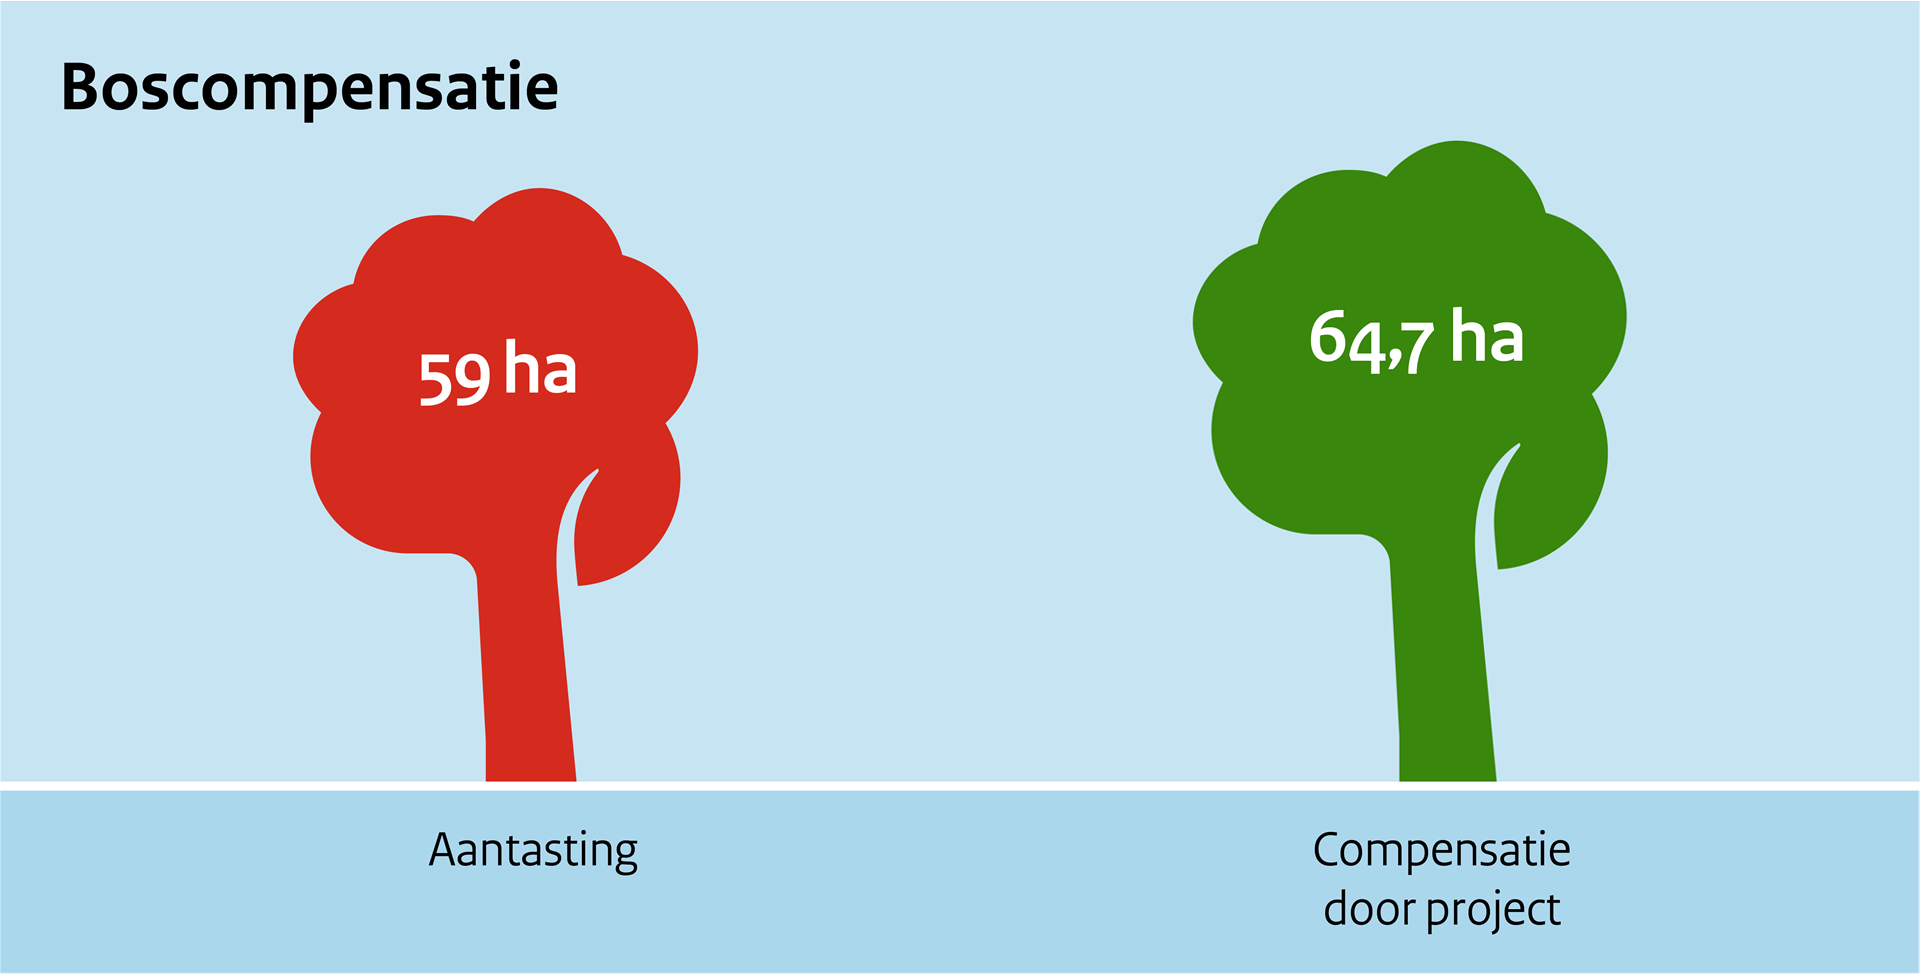 Afbeelding van de verhouding bosaantasting (59 ha) en boscompensatie door het project (64,7 ha).